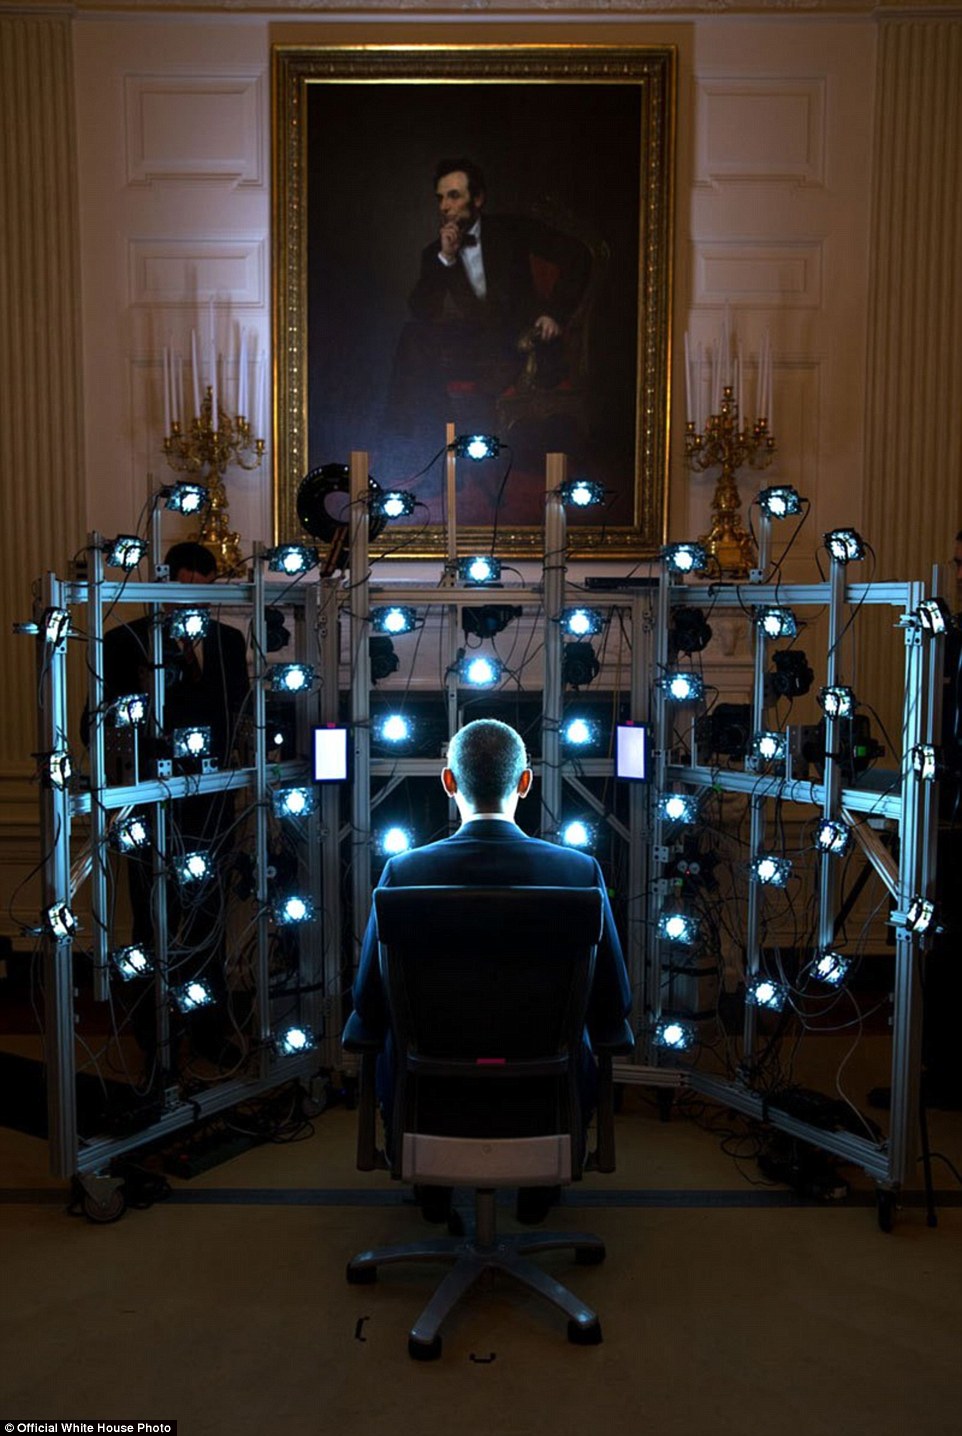 9 Juni 2014 - Obama duduk di sebuah kursi untuk pembuatan 3D portrait yang diprakarsai Smithsonian Institution. Terlihat banyak sekali lampu flah dan kamera untuk merekam setiap sudut wajah dan bentuk tubuh dari sang presiden Amerika